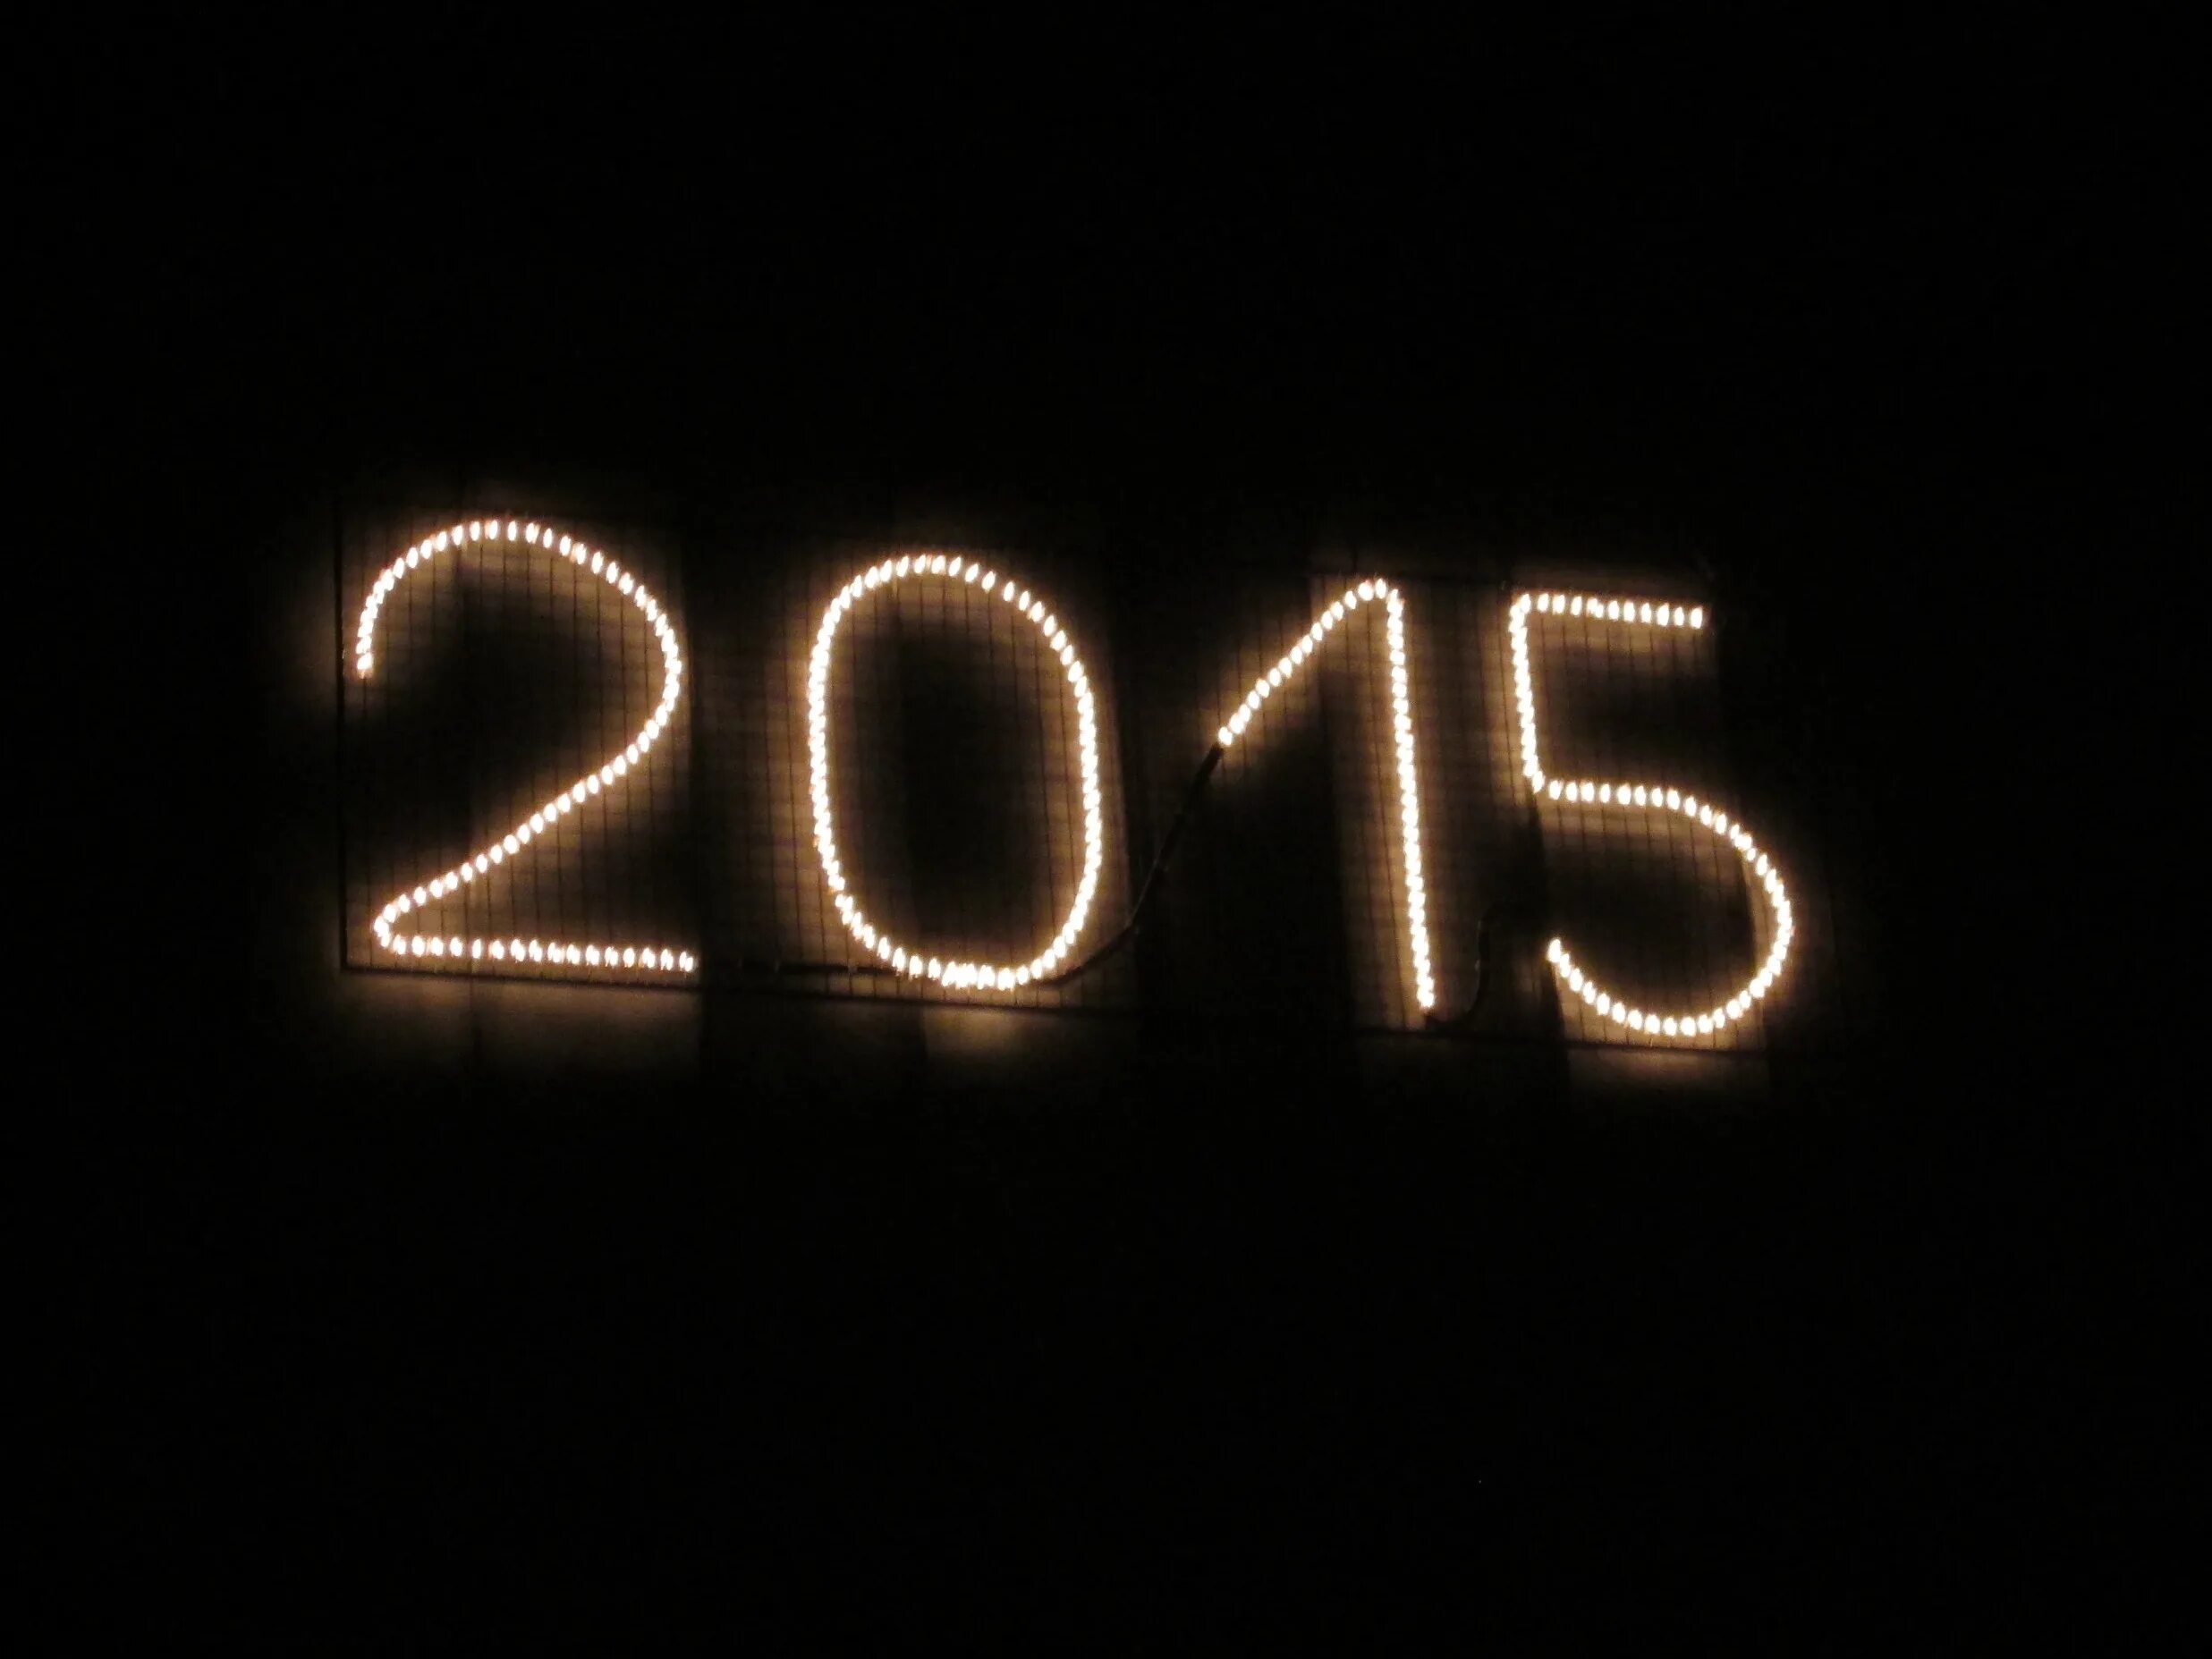 2015 б г. Картинки 2015. 2015 Цифры. Картинка 2015г. 2015 Цифра фото.